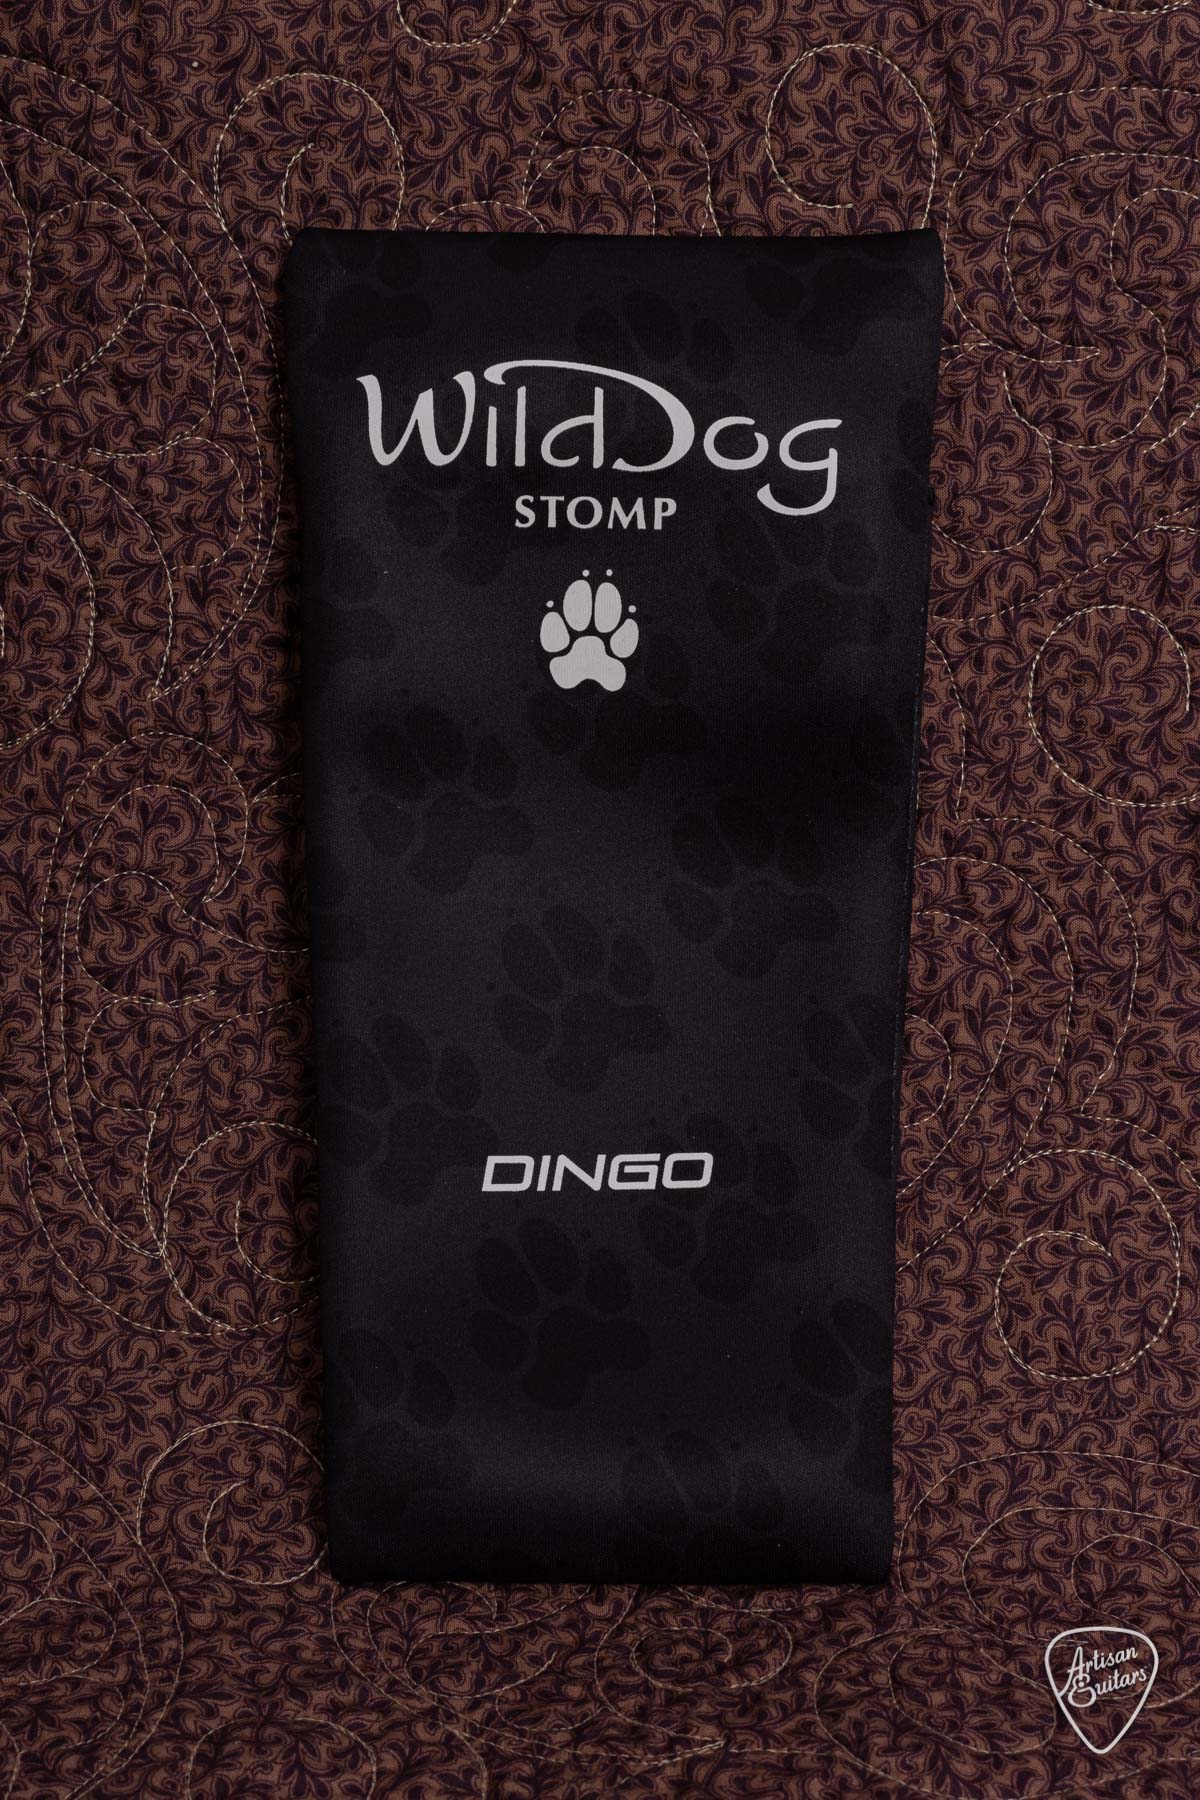 Wild Dog Dingo Stomp Box - WD-481022